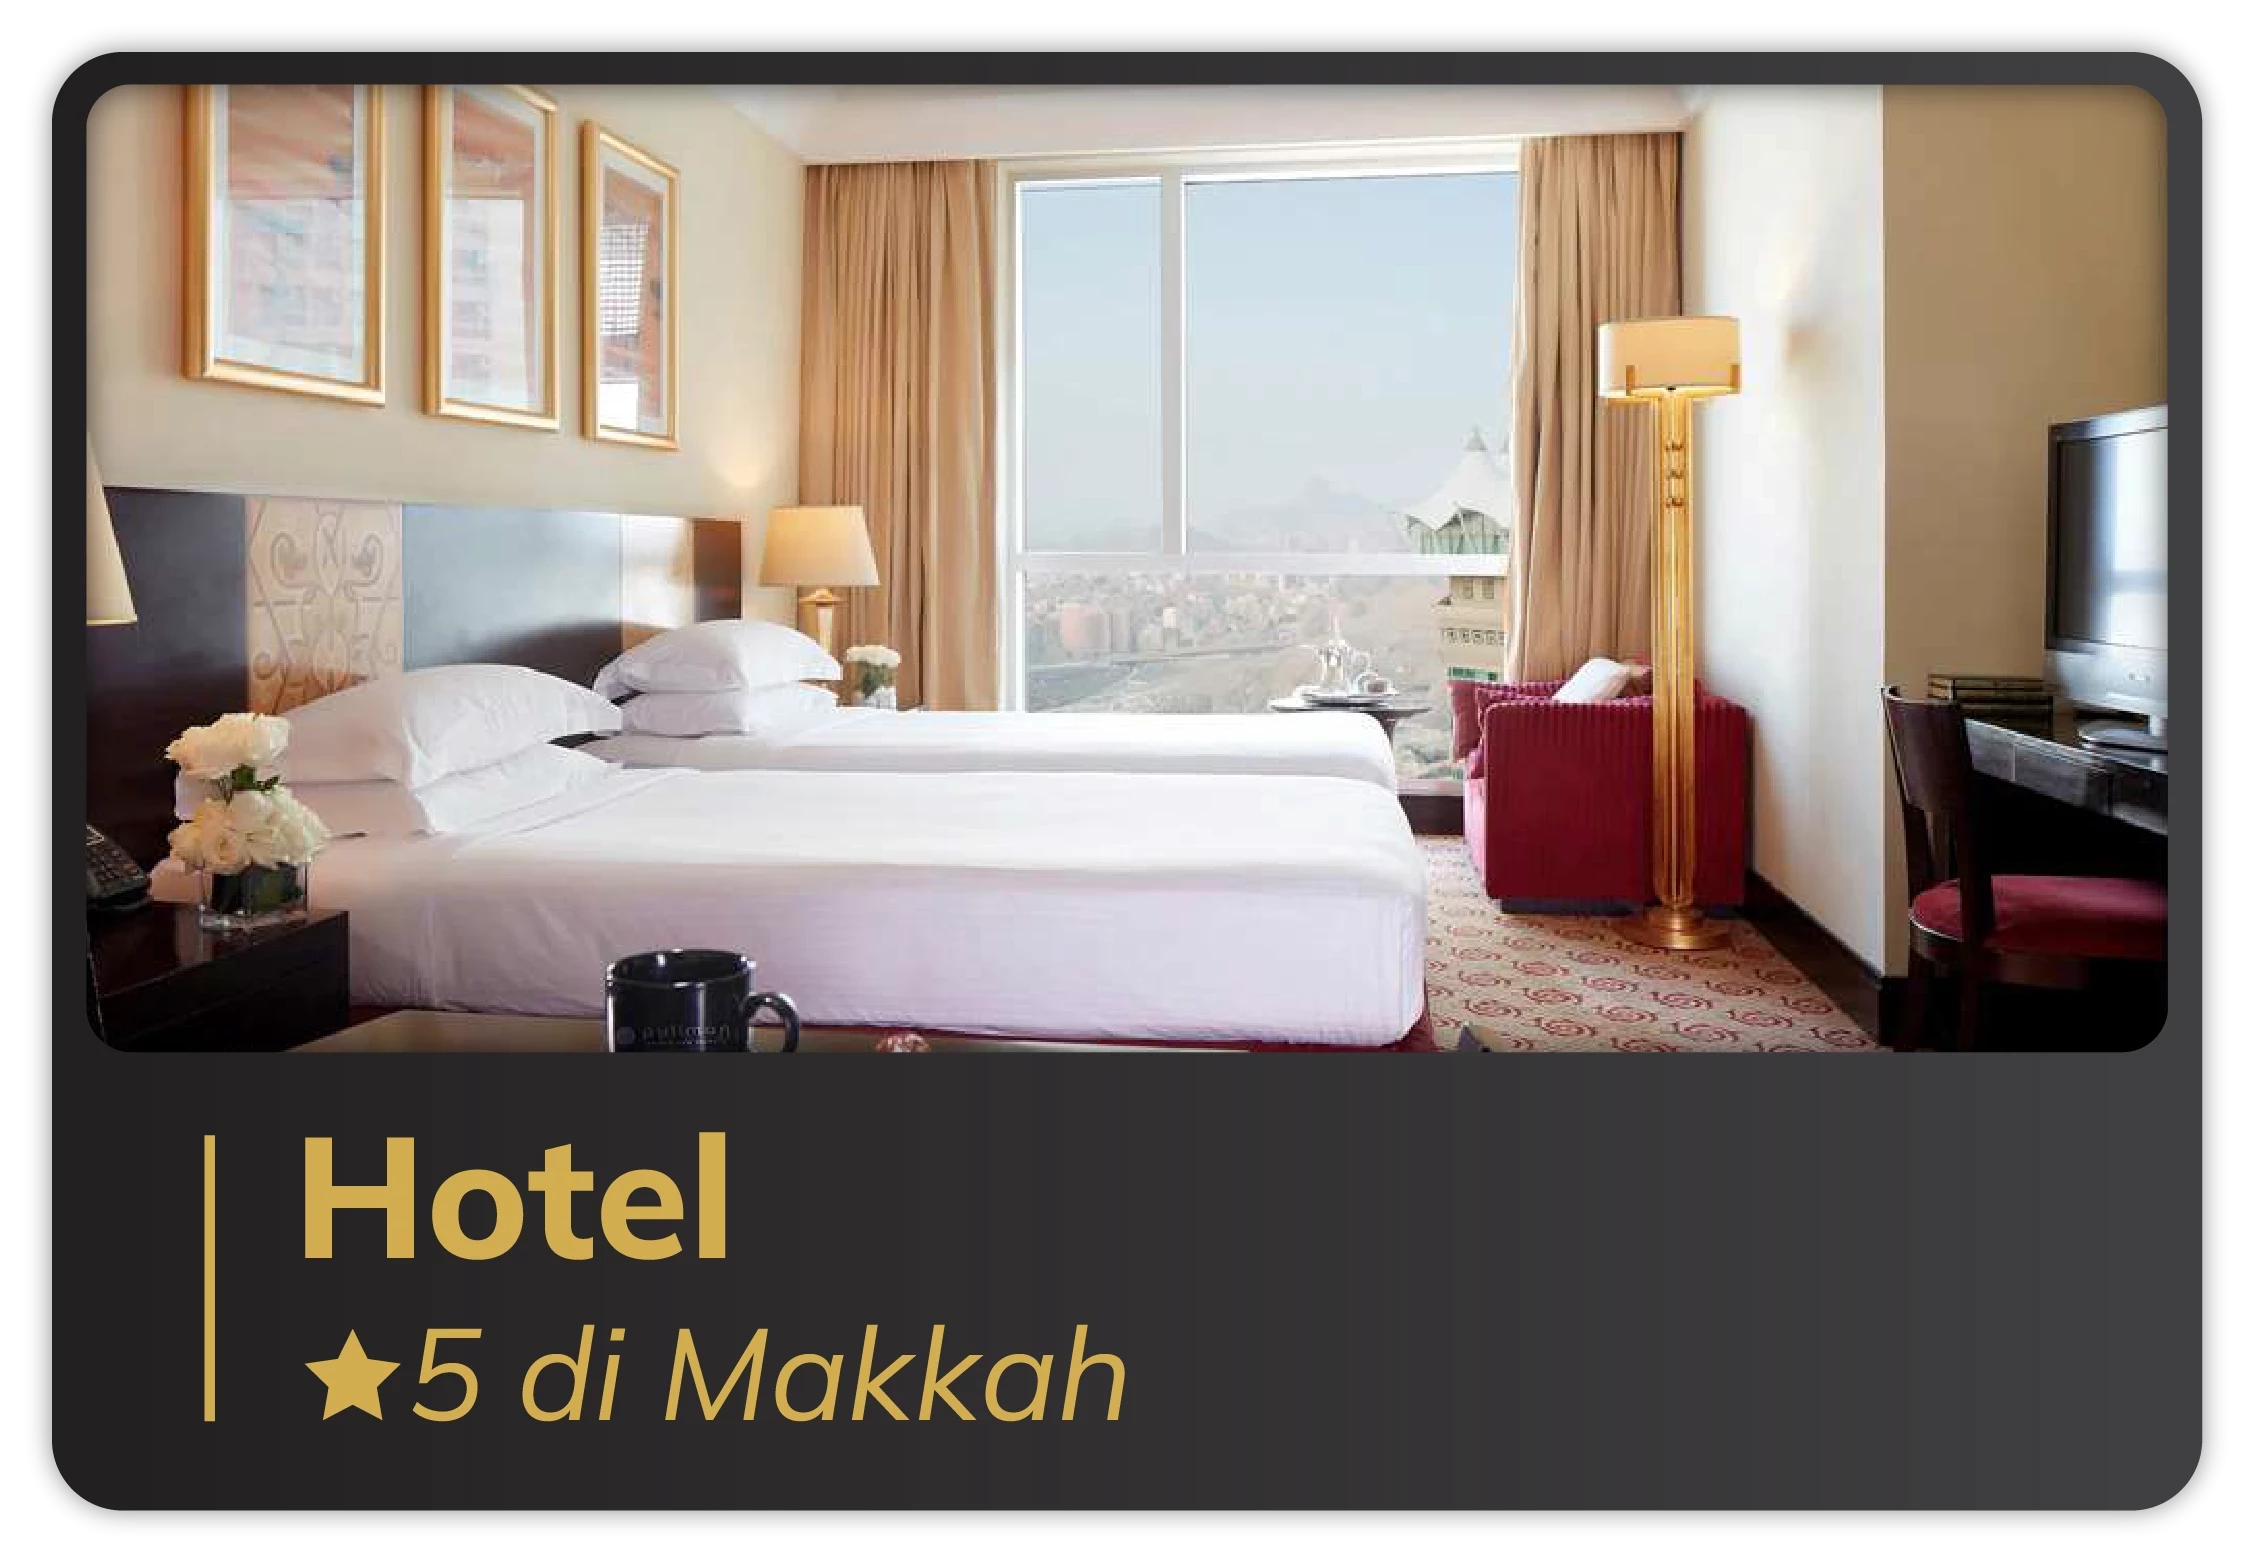 Hotel Bintang 5 di Makkah